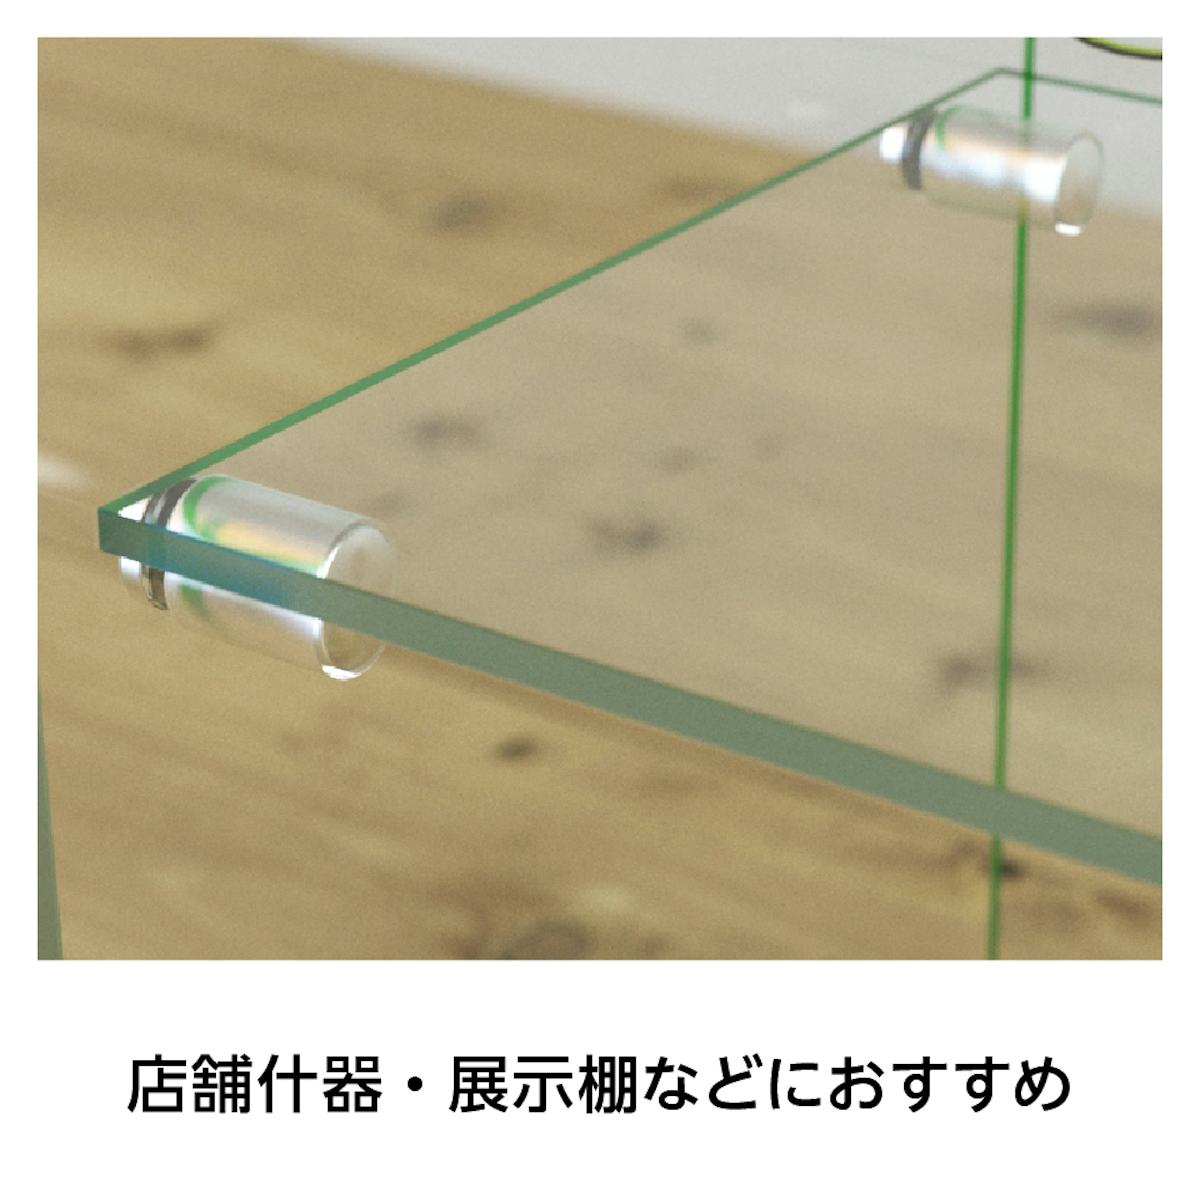 「強化ガラス：棚受けダボセット(ガラス地用)」なら、DIYでガラス製のケースや棚にガラス棚を増やすことができる